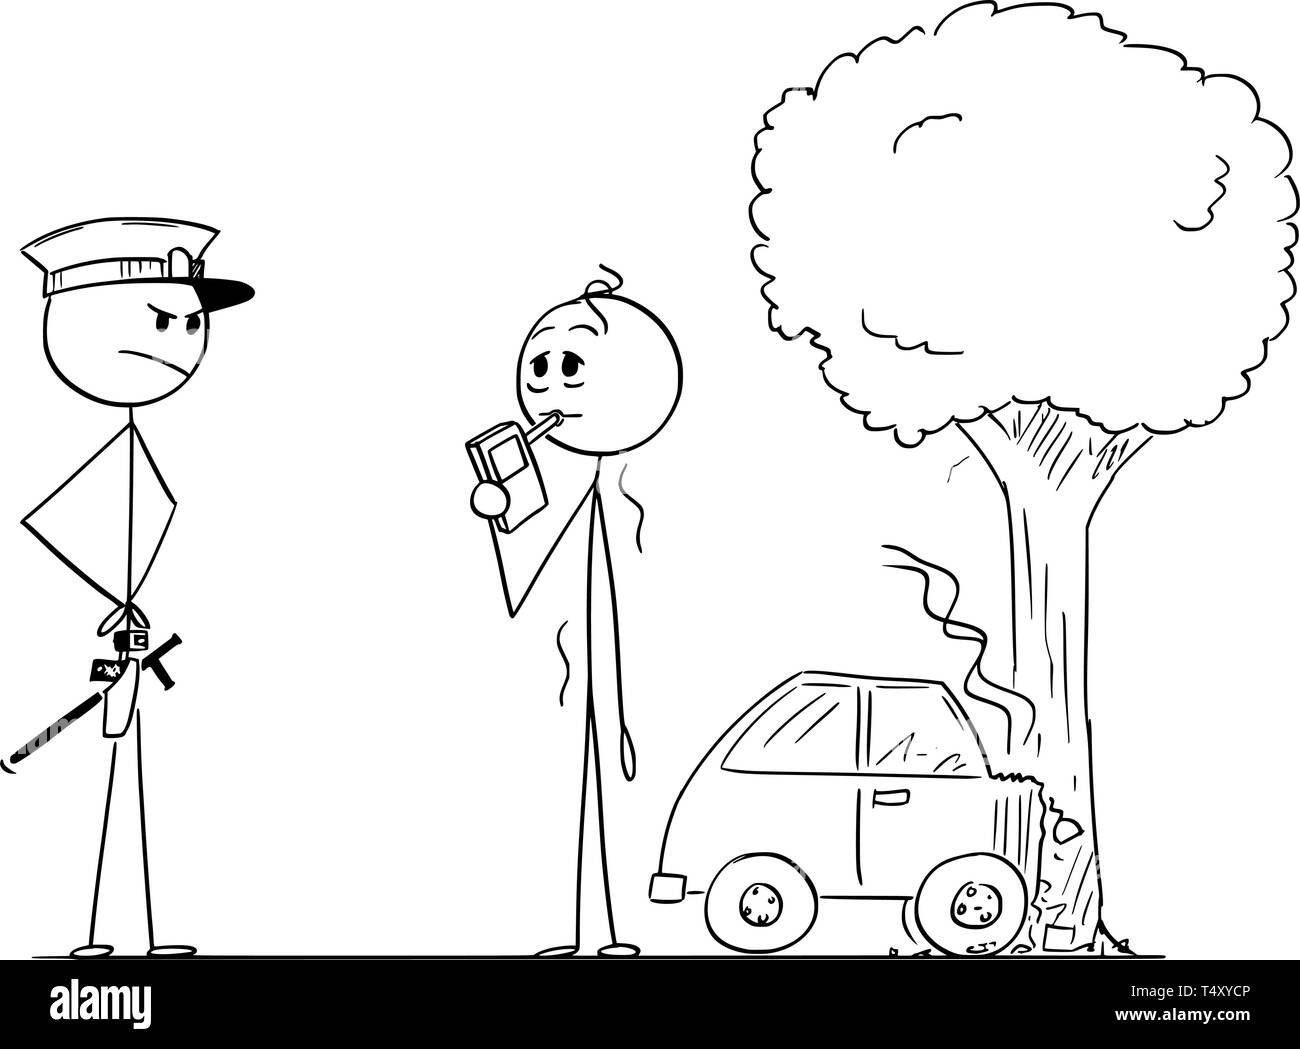 Cartoon stick disegno di figura illustrazione concettuale che di controllo del livello di alcool di uomo ubriaco o driver dopo l'incidente. Illustrazione Vettoriale